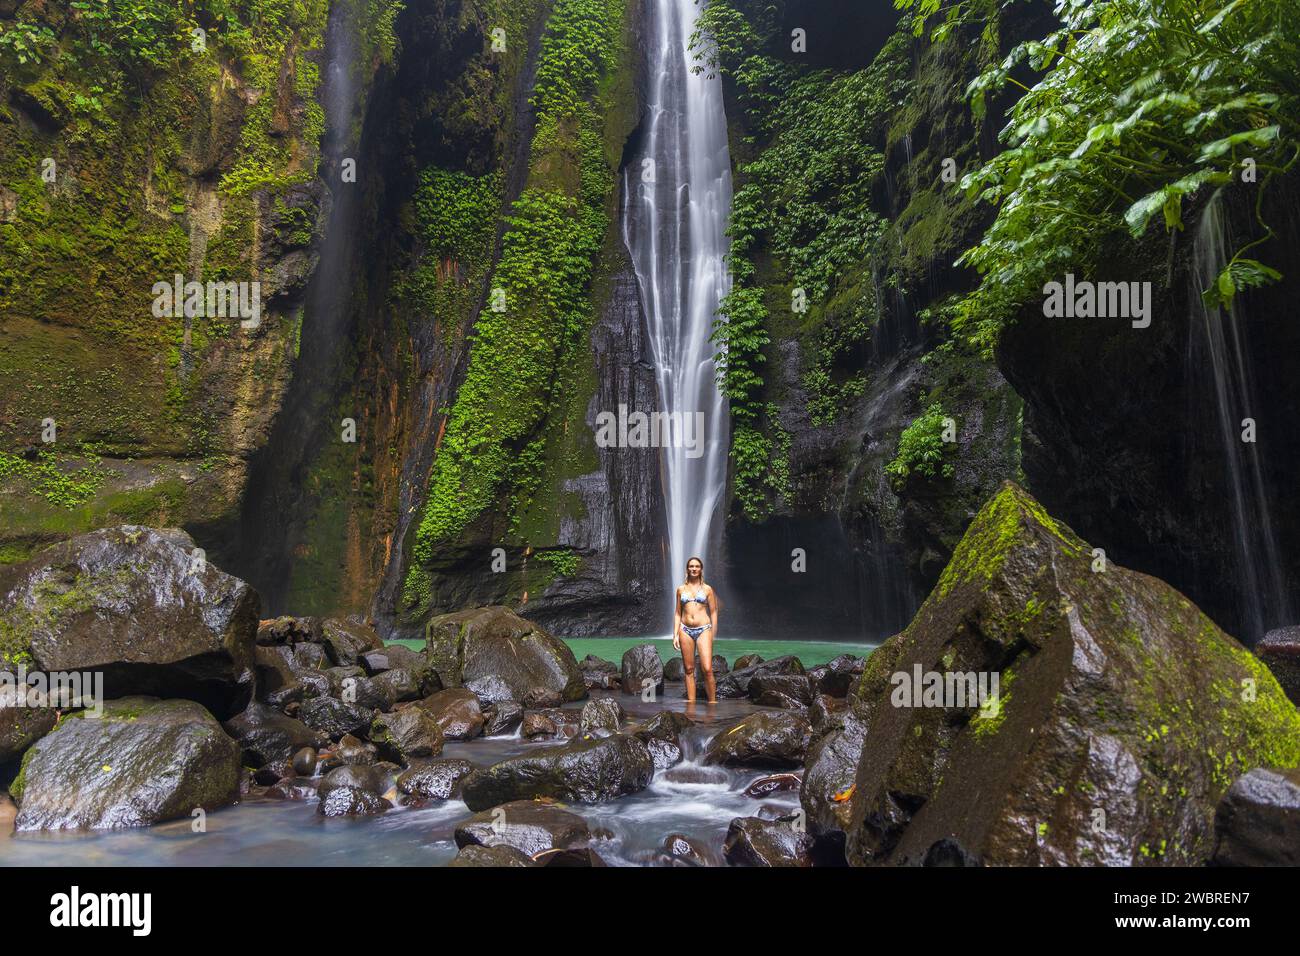 Une jeune femme en maillot de bain pose à Hidden Waterfall près de Sekumpul, île de Bali, Indonésie Banque D'Images